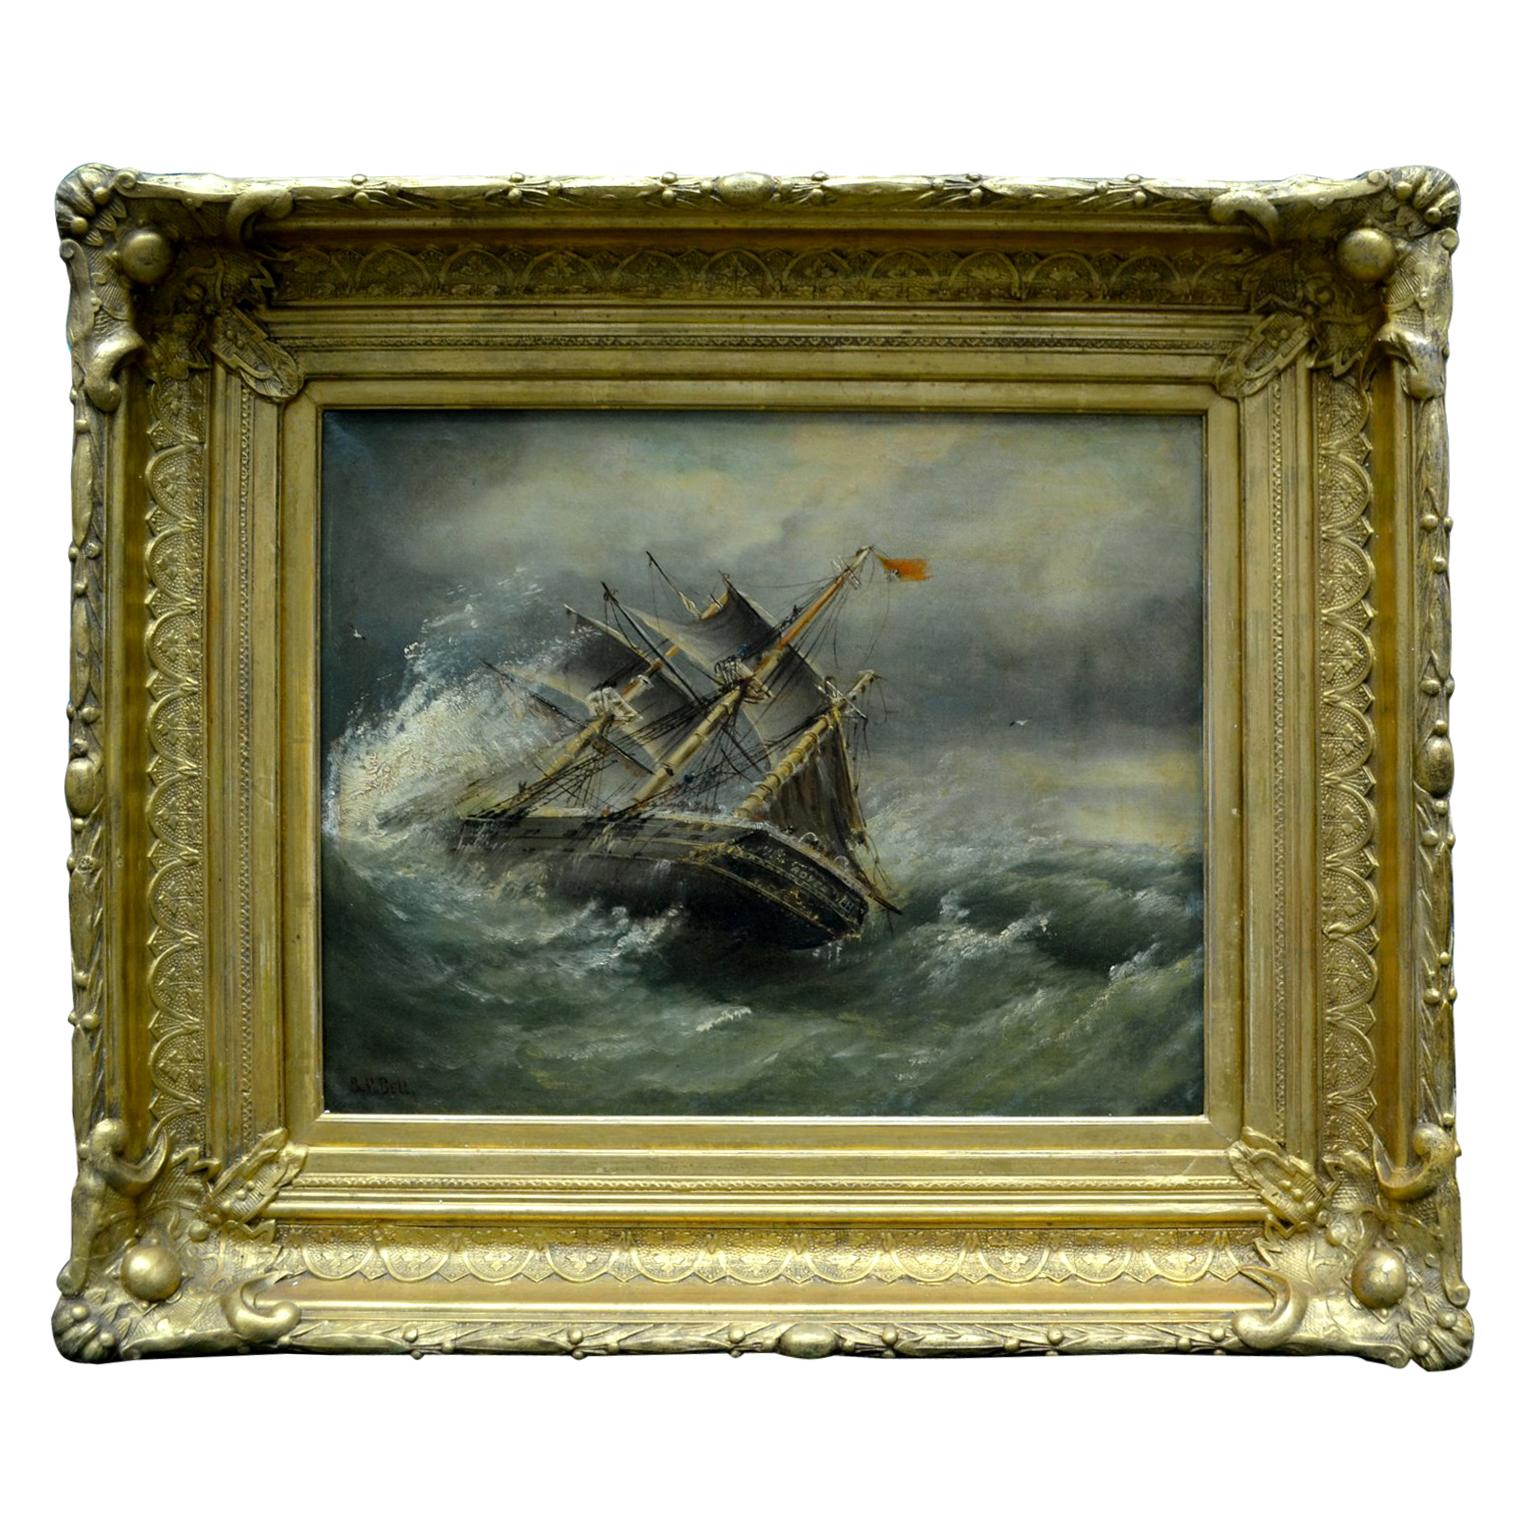 La peinture à l'huile sur toile représente une vue latérale partielle du galion britannique à trois mâts appelé 